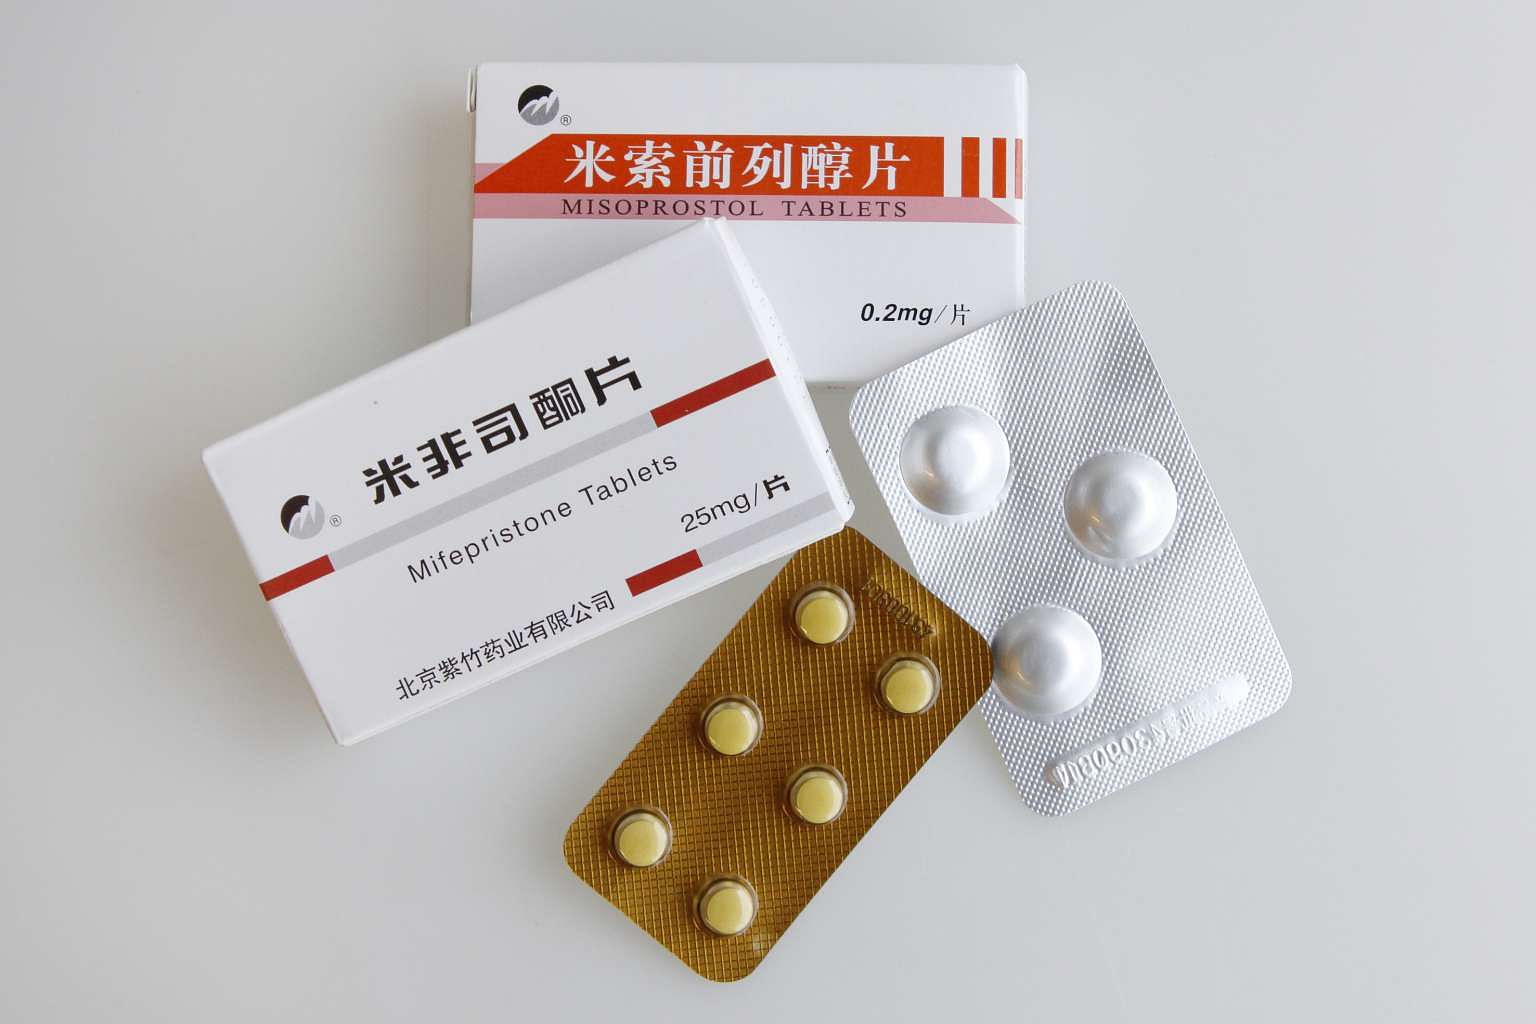 Таблетка от нежелательной часа. Таблетки китайские misoprostol. Китайские таблетки аборт мифепристон. Китайская таблетка для прерывания беременности мифепристон. Мифепристон 25 мг китайские таблетки.